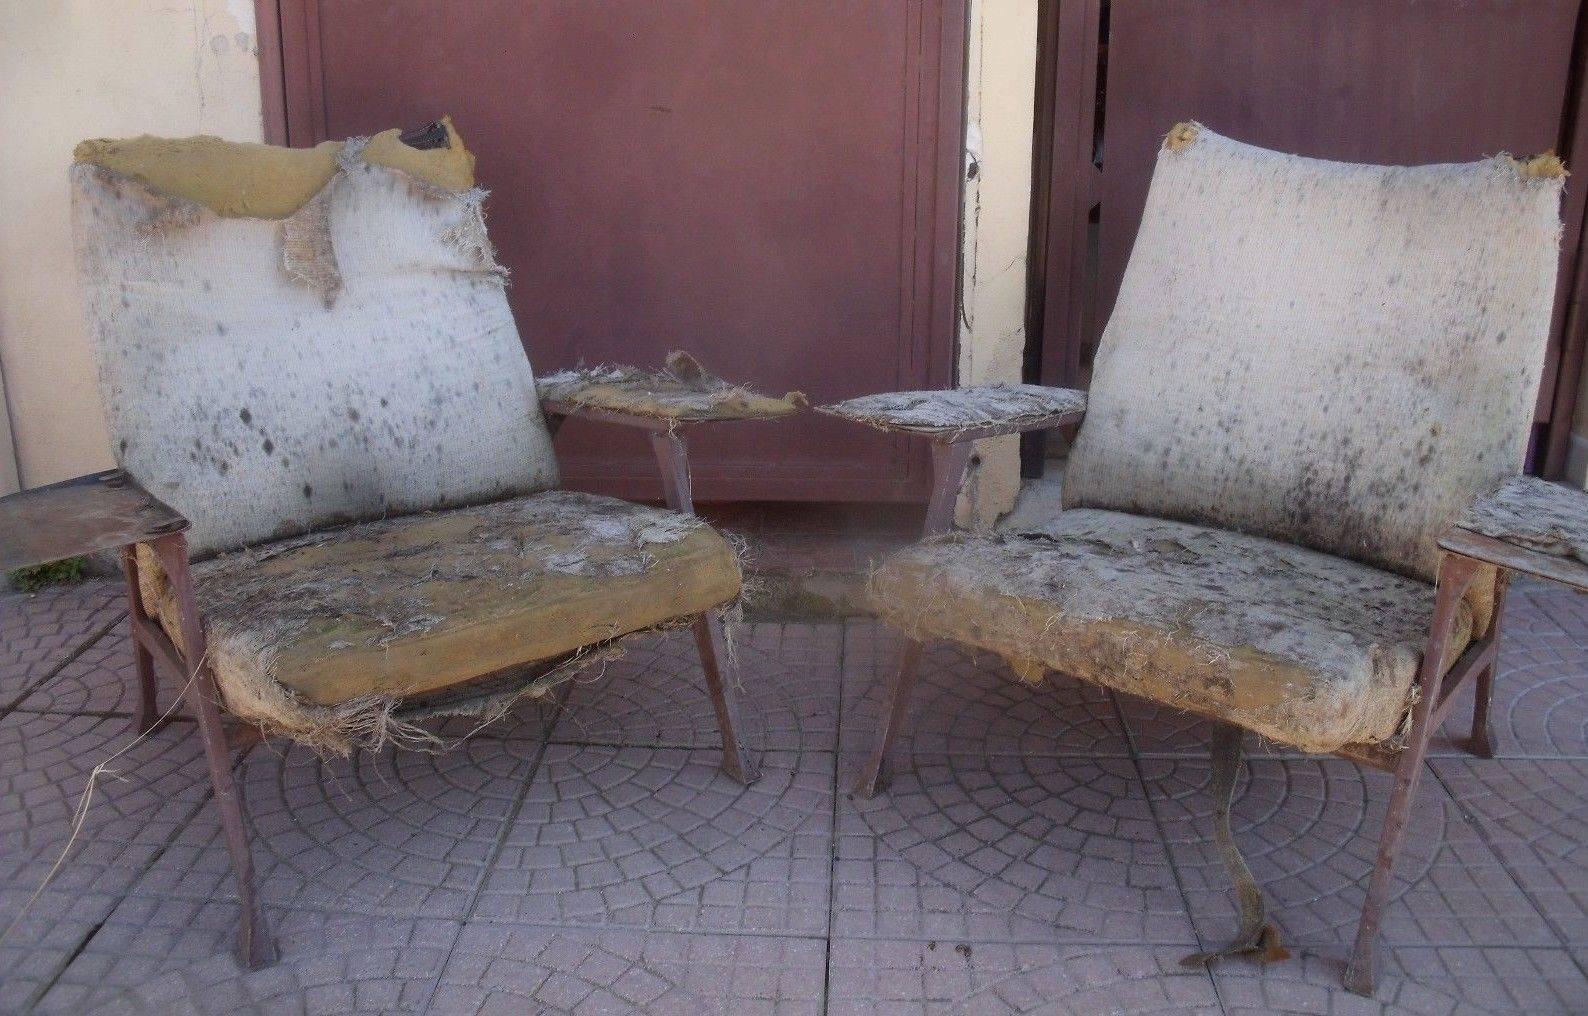 Rare Roberto Menghi 'Hall' Lounge Chairs, Arflex , 1958, 'Compasso D'oro', 1959 1